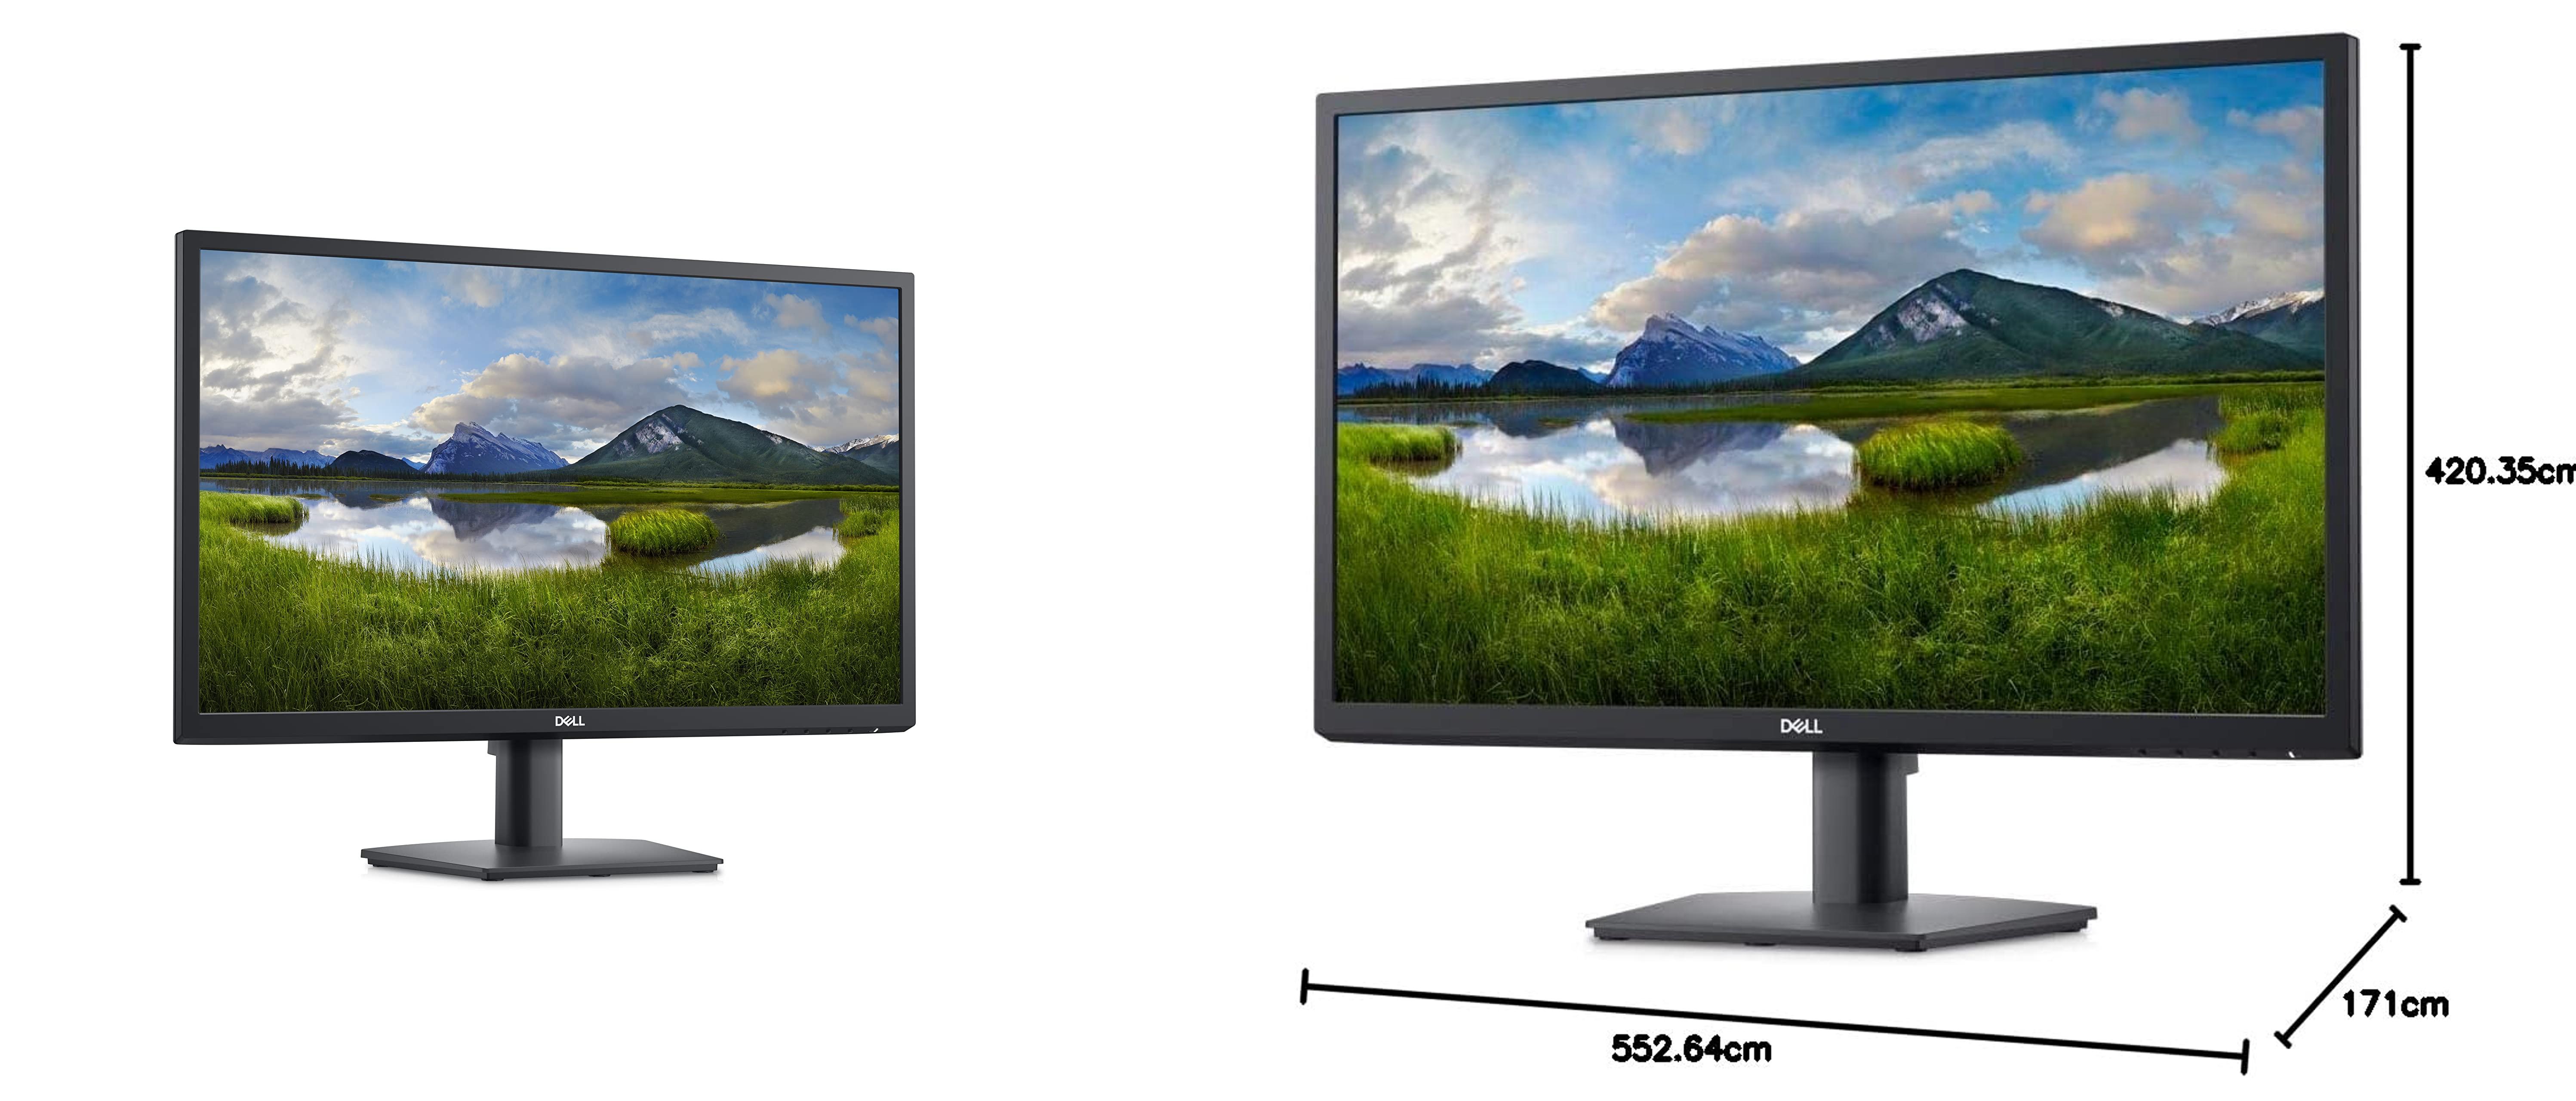 Descubre el rendimiento de alta definición con el monitor Dell E2423H de 24 pulgadas